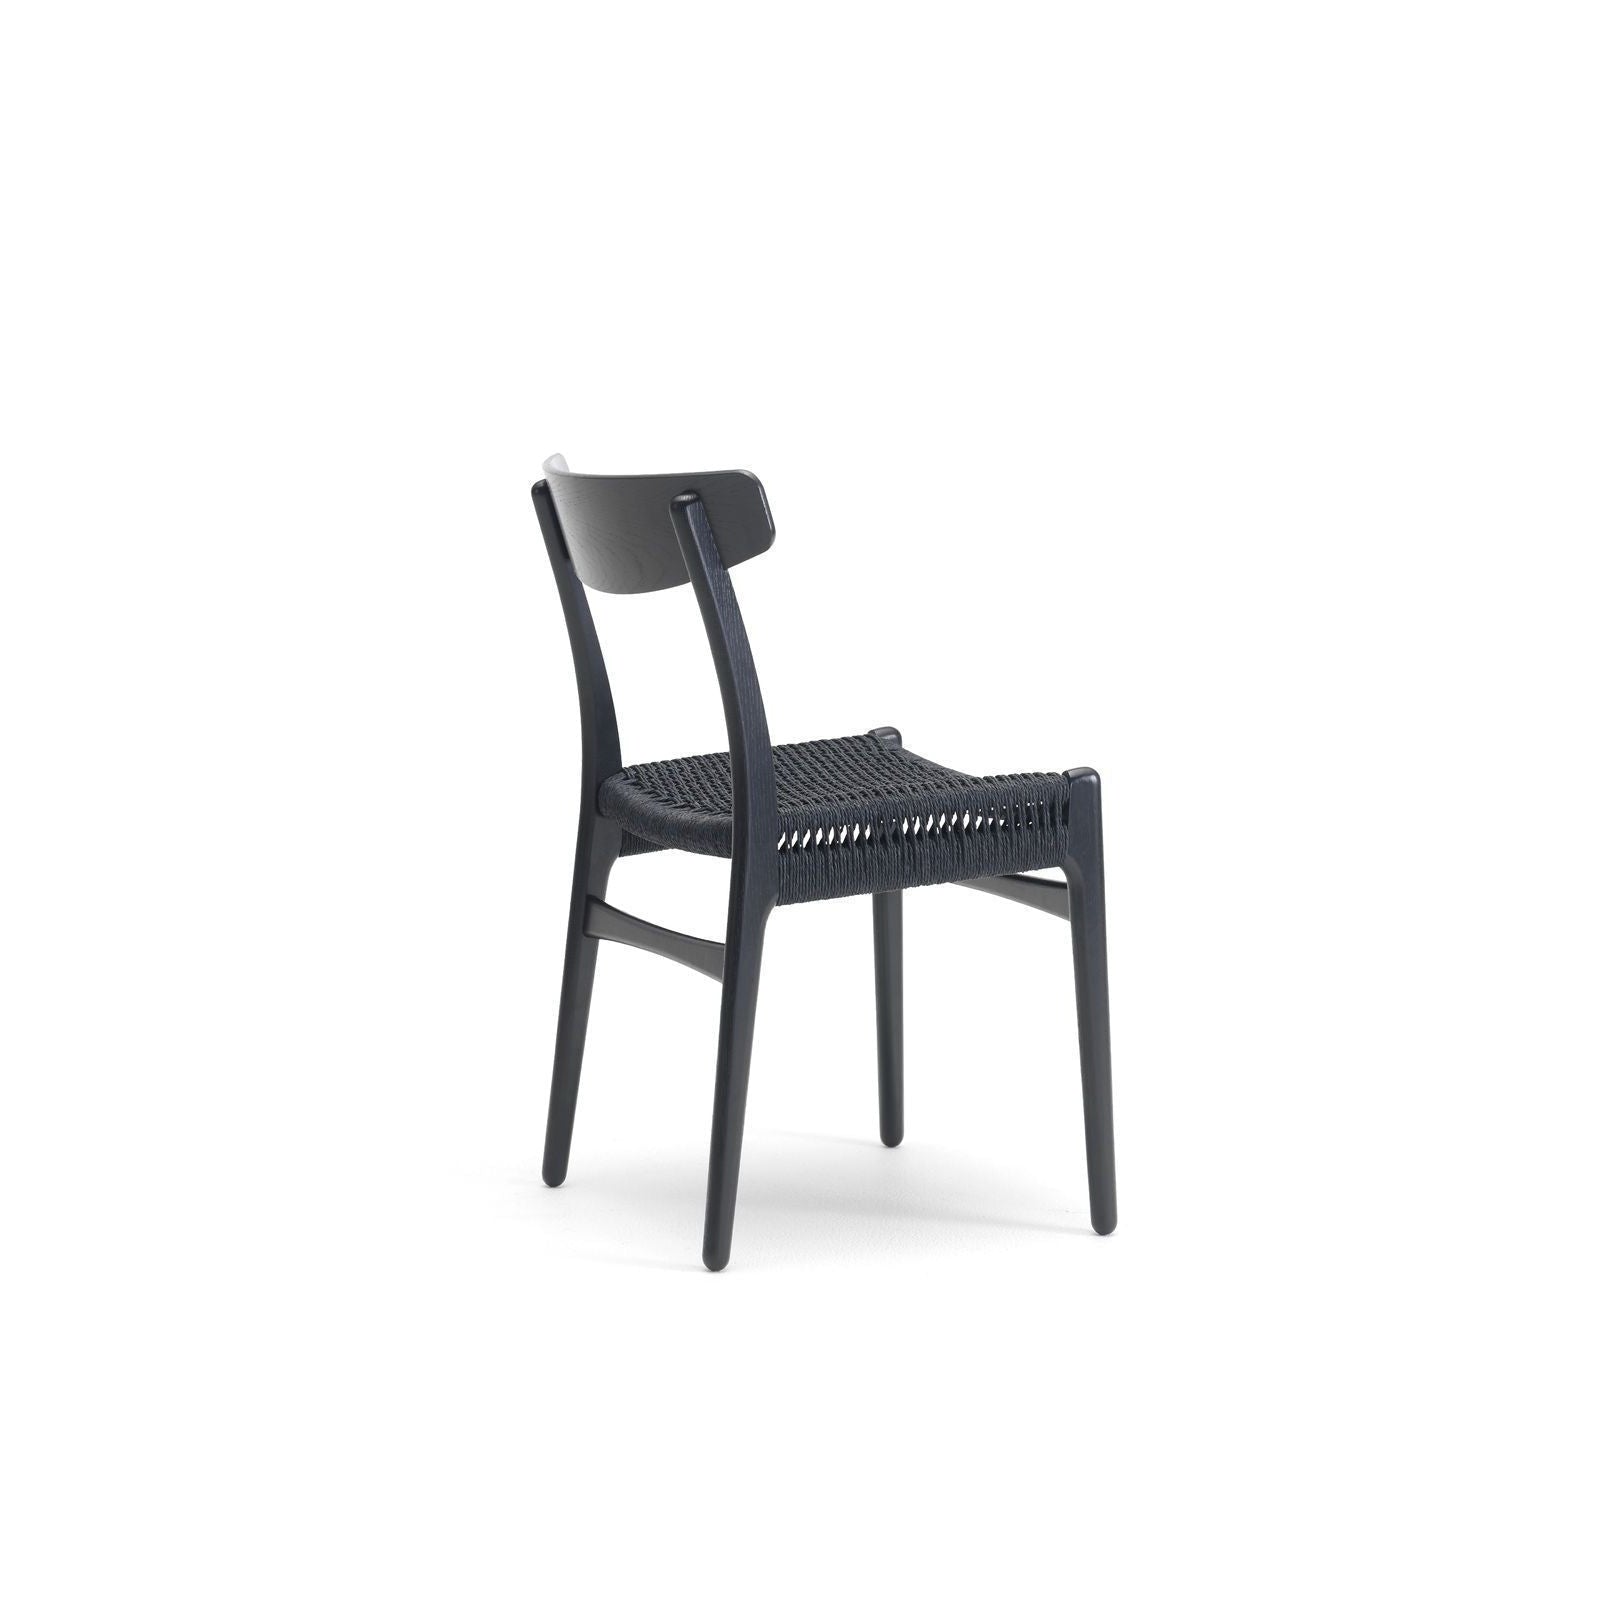 Carl Hansen CH23 -stol, svart ek/svart papperssladd